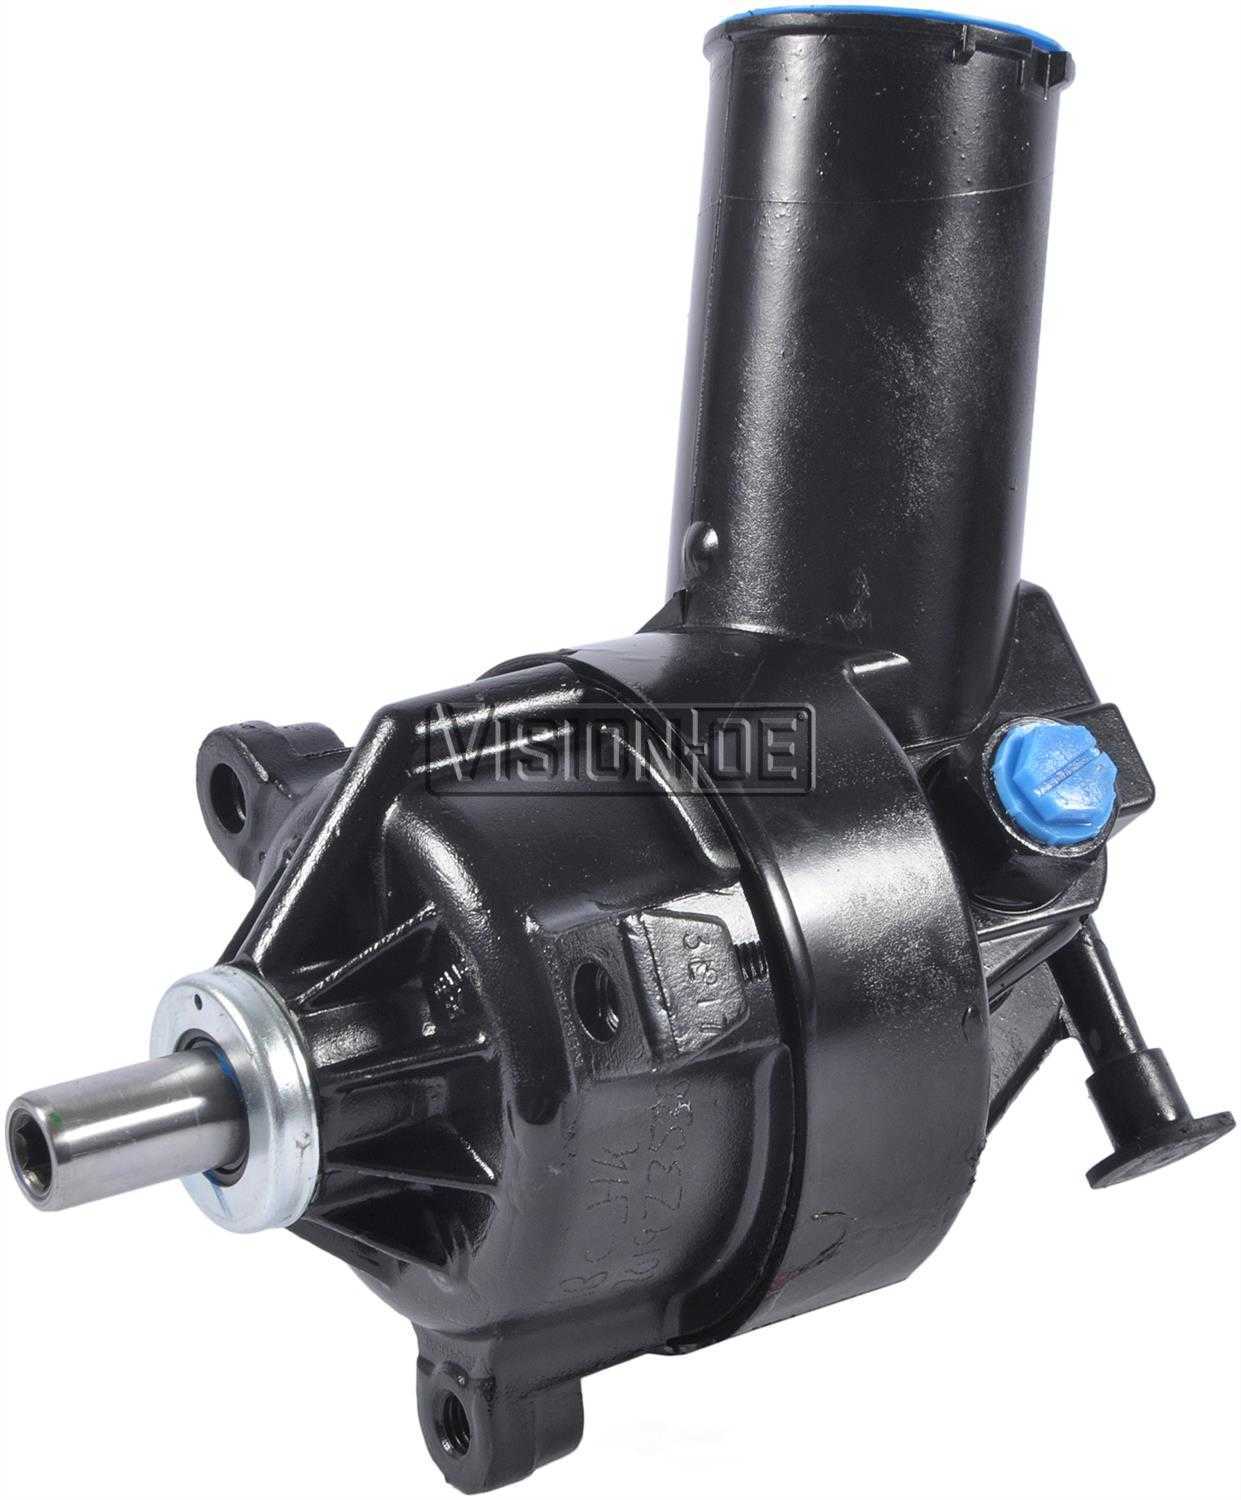 VISION-OE - Reman Power Steering Pump - VOE 711-2115